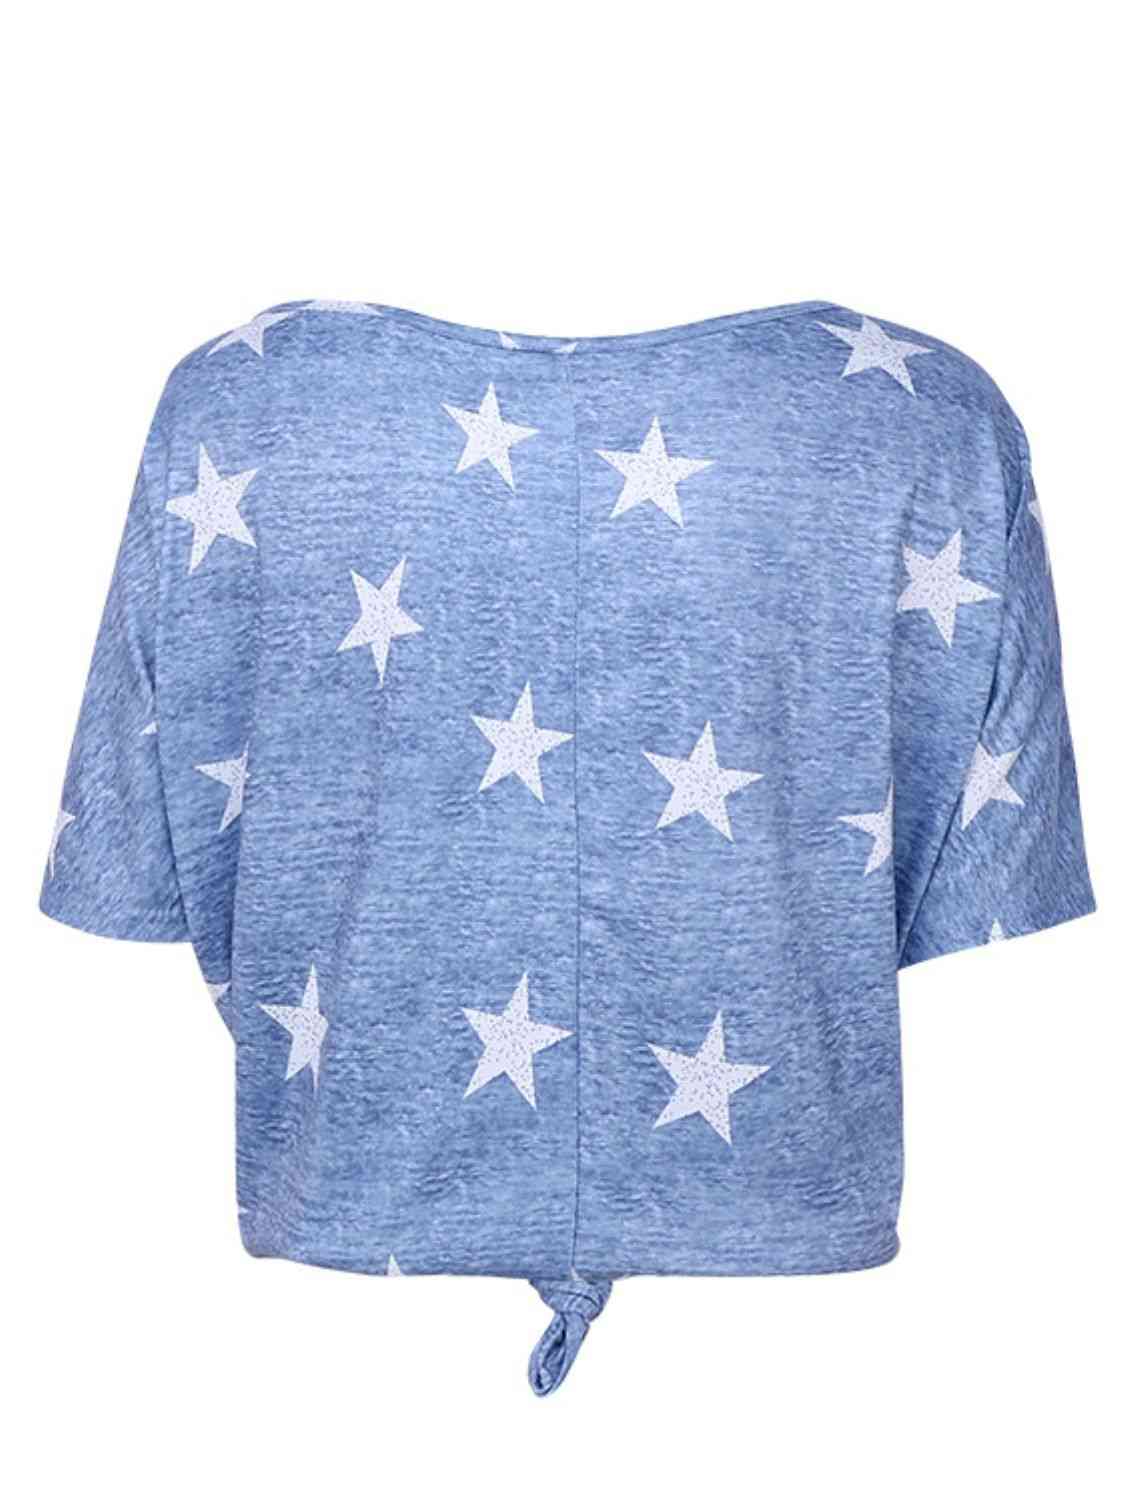 Star Print Short Sleeve T-Shirt